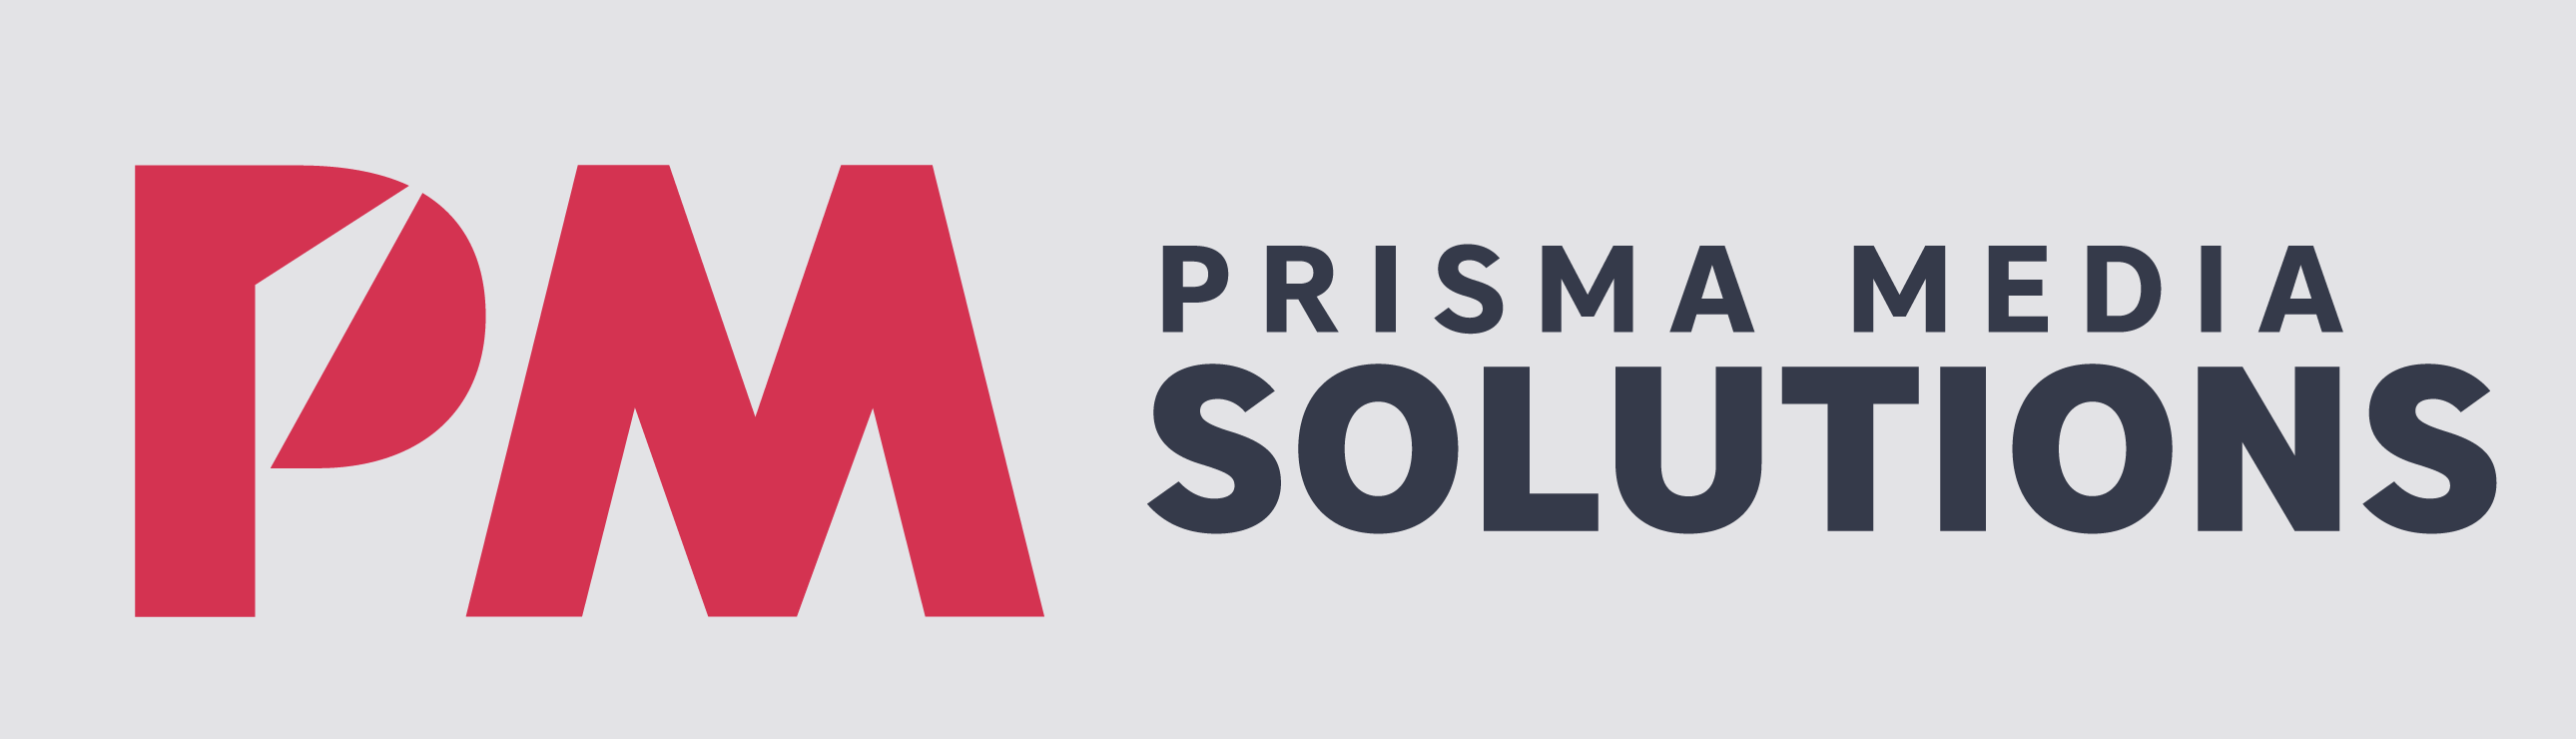 Prisma Media choisit AdsWizz